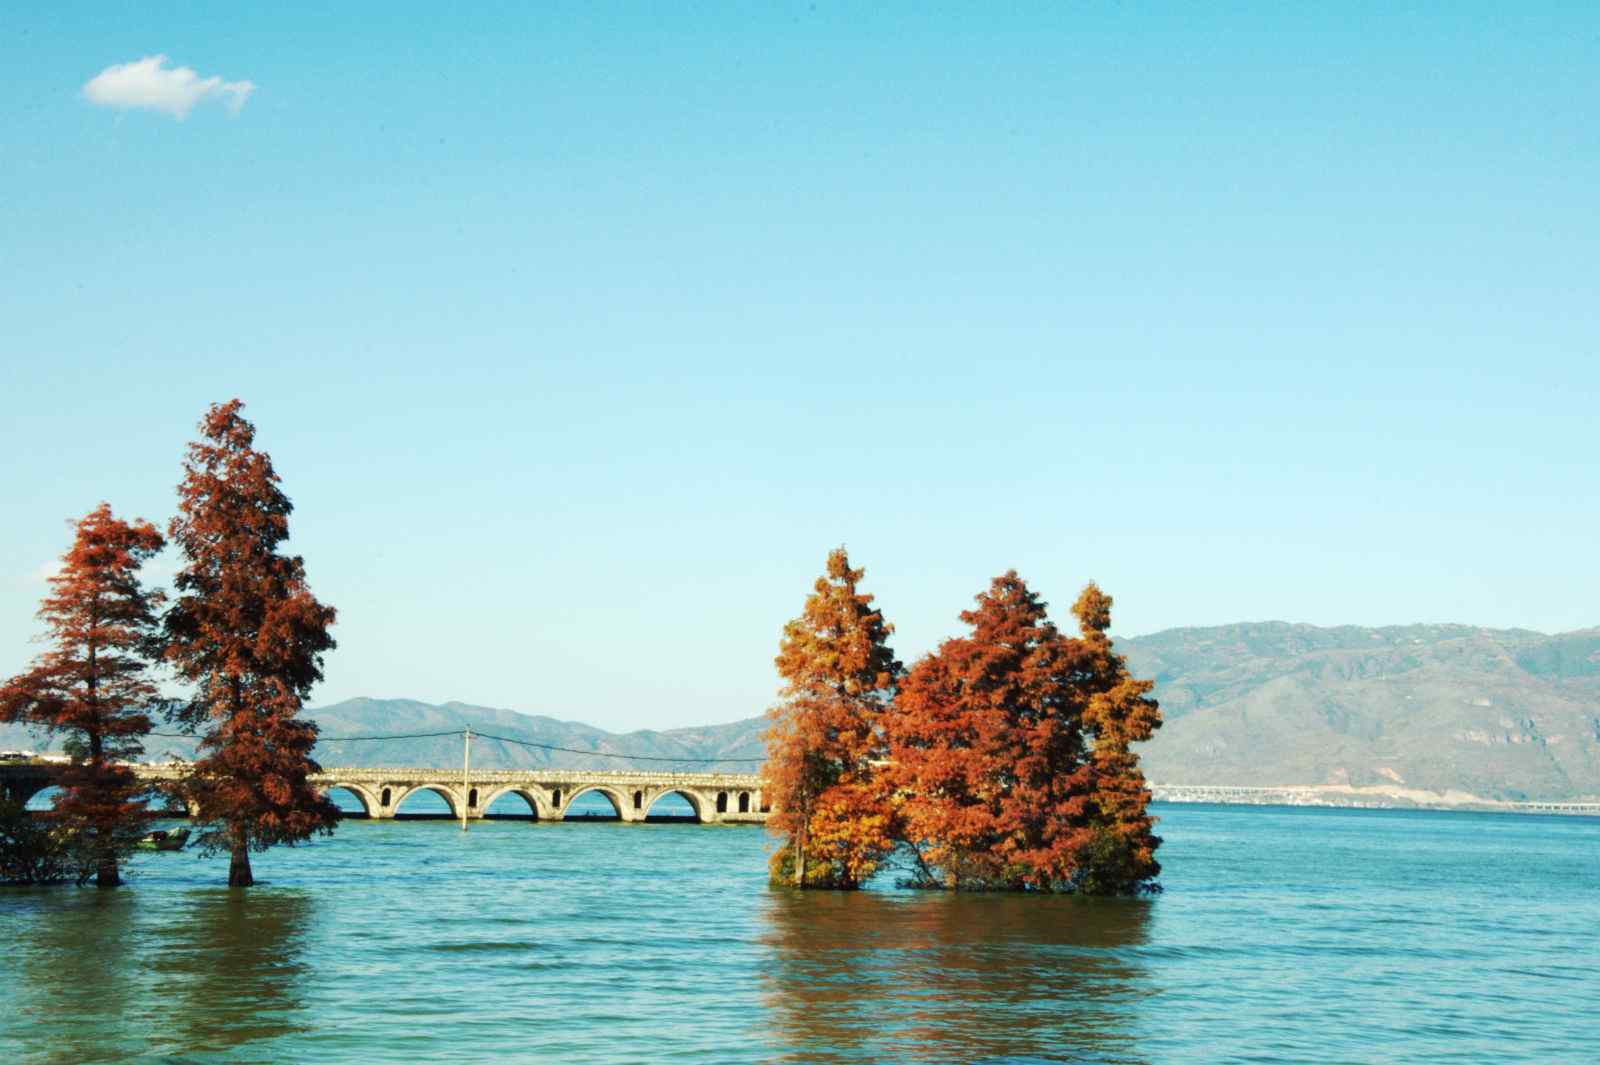 洱海唯美湖边风景图片桌面壁纸